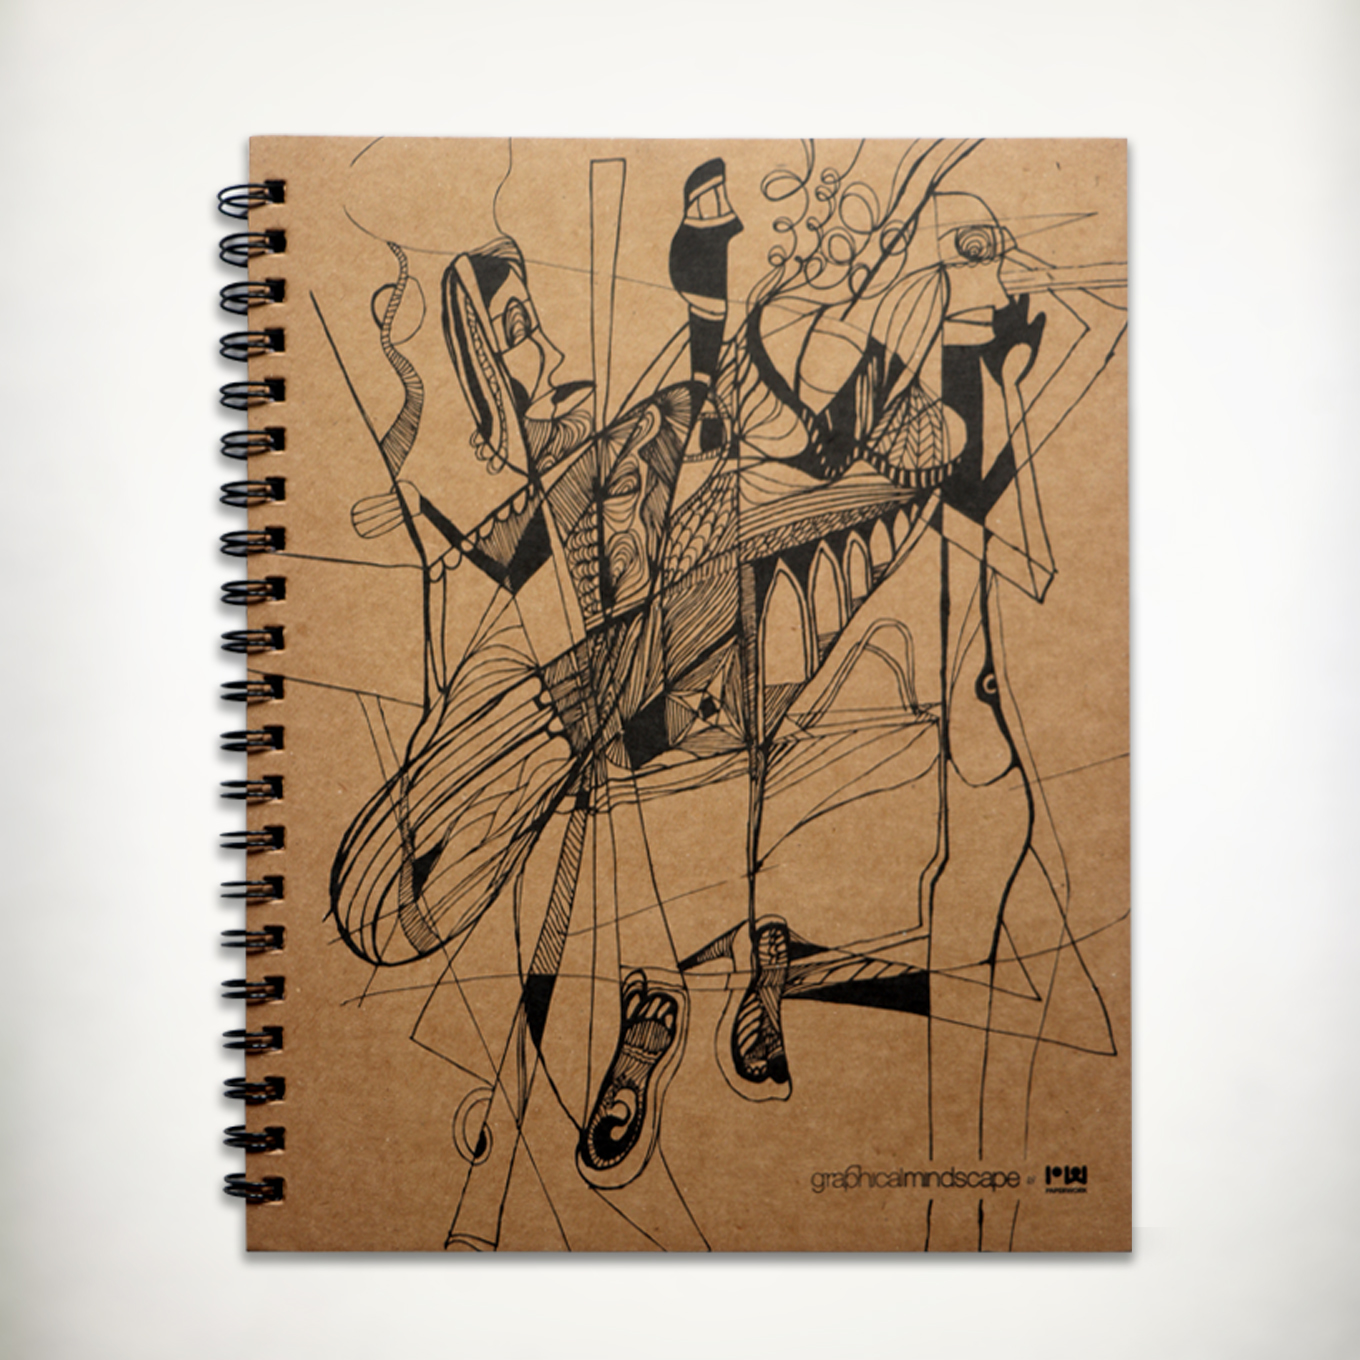 Spiral Notebook A4 - Awam - By Paperwork